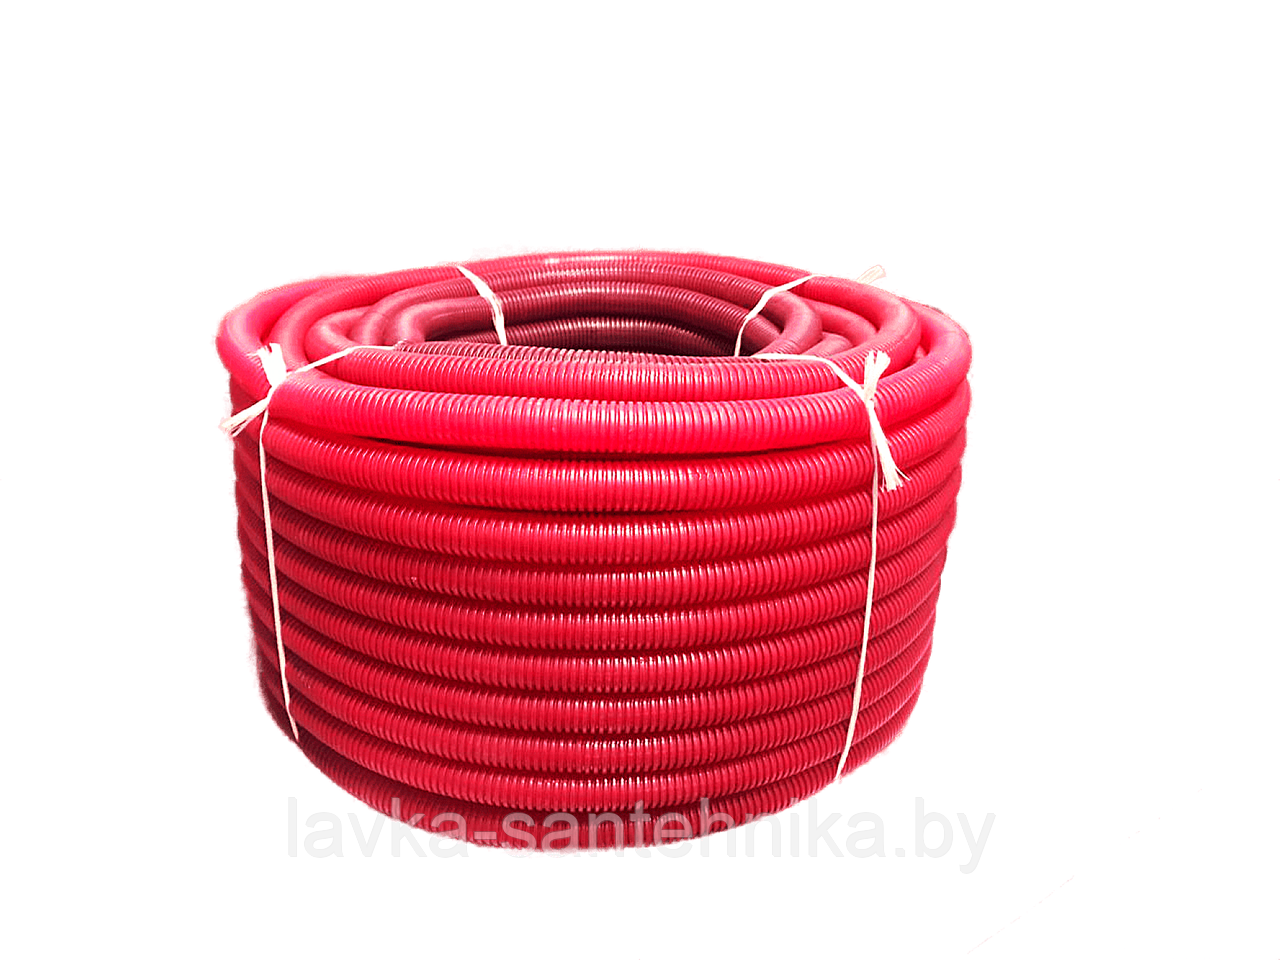 Труба (пешель) защитная гофрированная 18 мм (цвет: красный, длина бухты: 50 м)